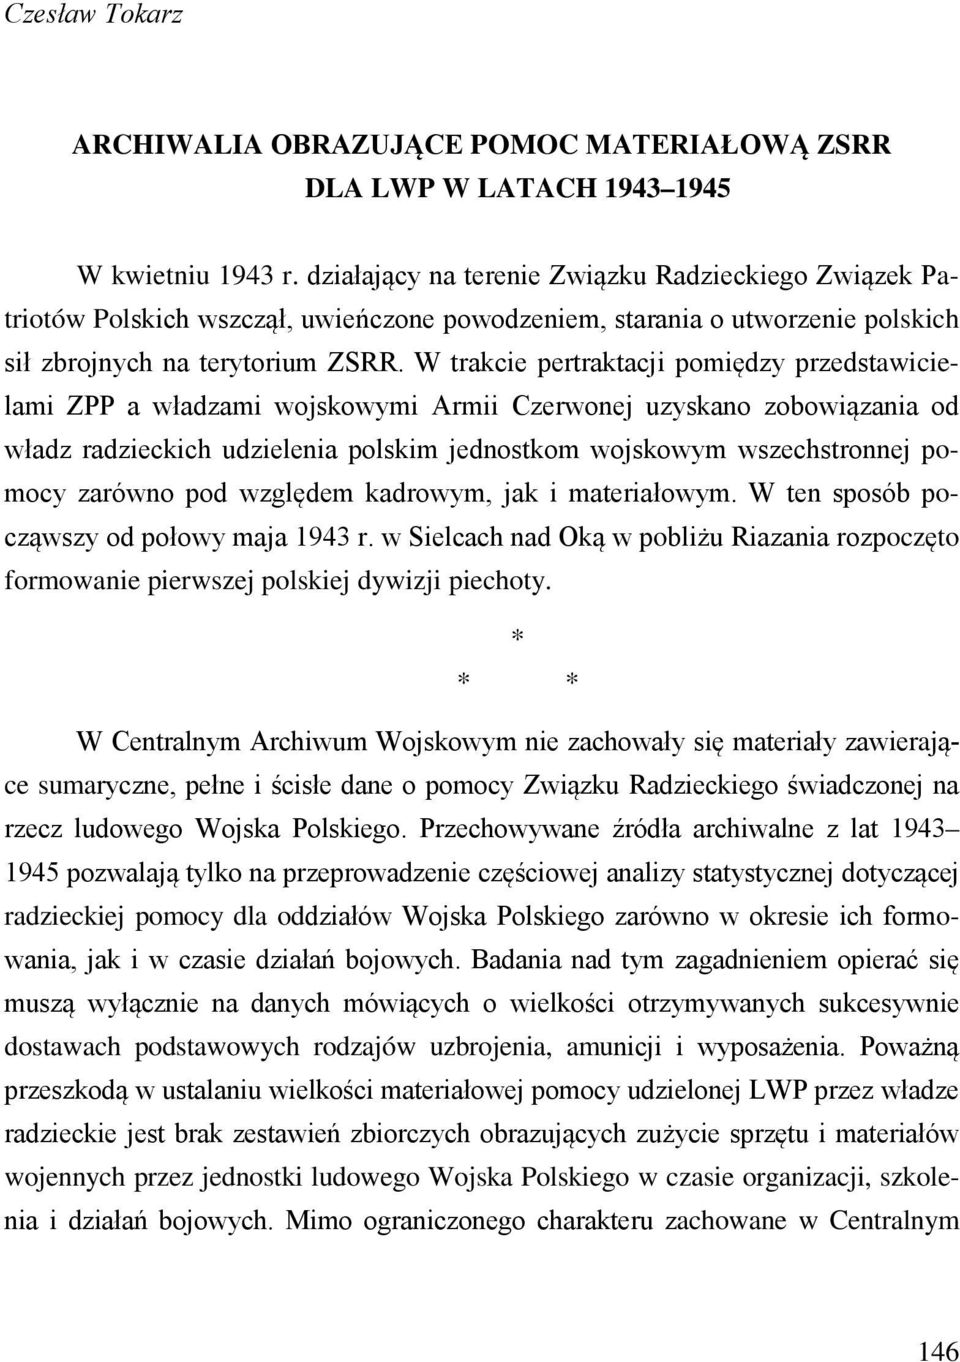 W trakcie pertraktacji pomiędzy przedstawicielami ZPP a władzami wojskowymi Armii Czerwonej uzyskano zobowiązania od władz radzieckich udzielenia polskim jednostkom wojskowym wszechstronnej pomocy